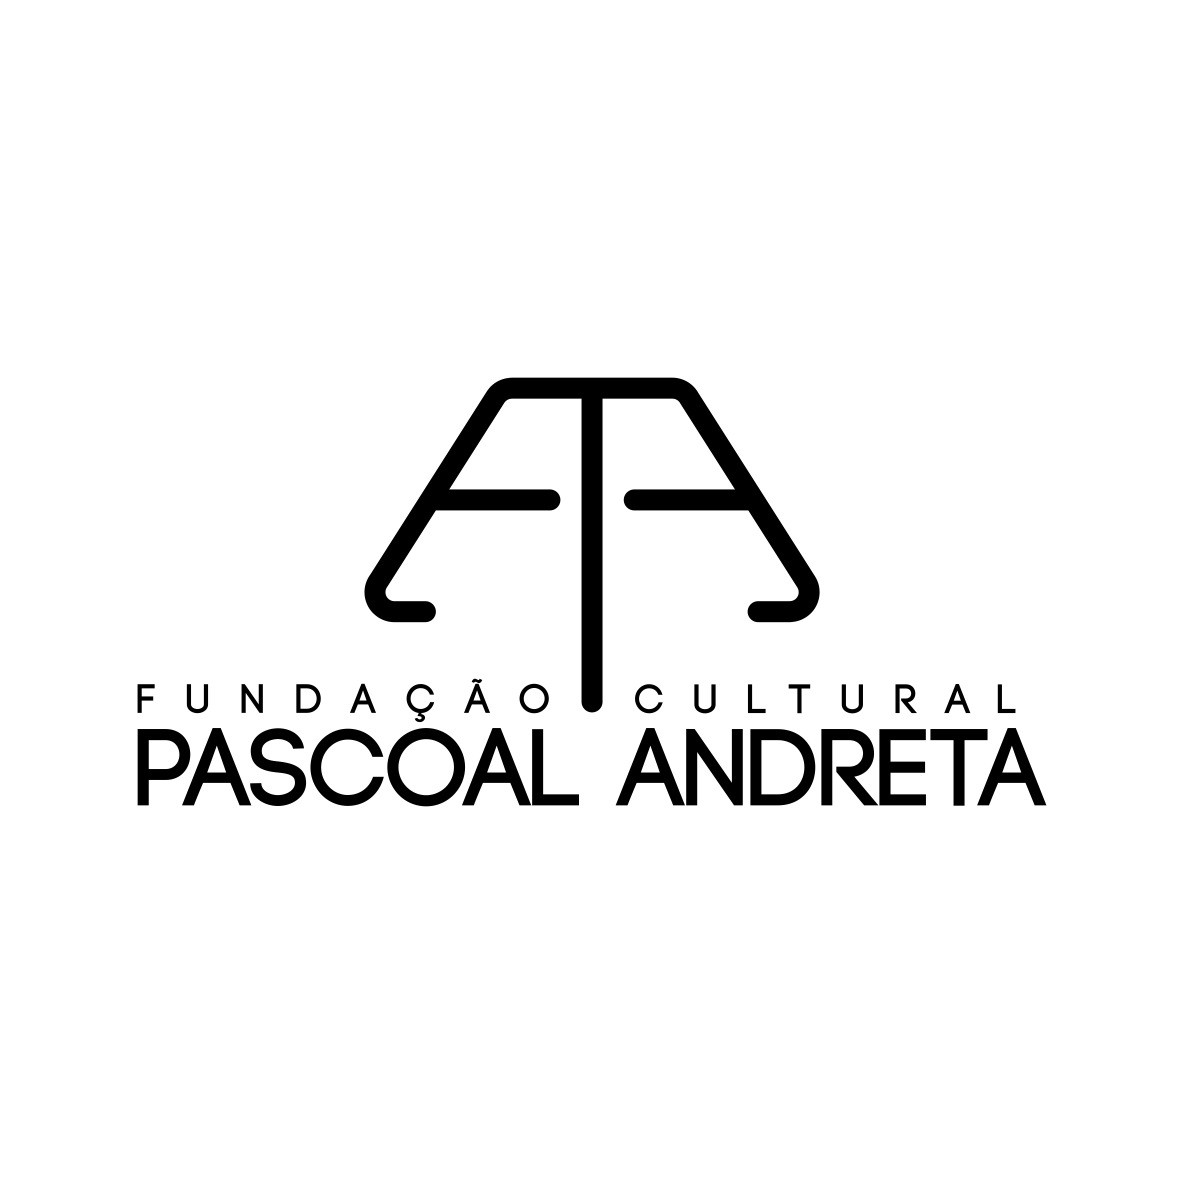 Fundação Cultural Pascoal Andreta